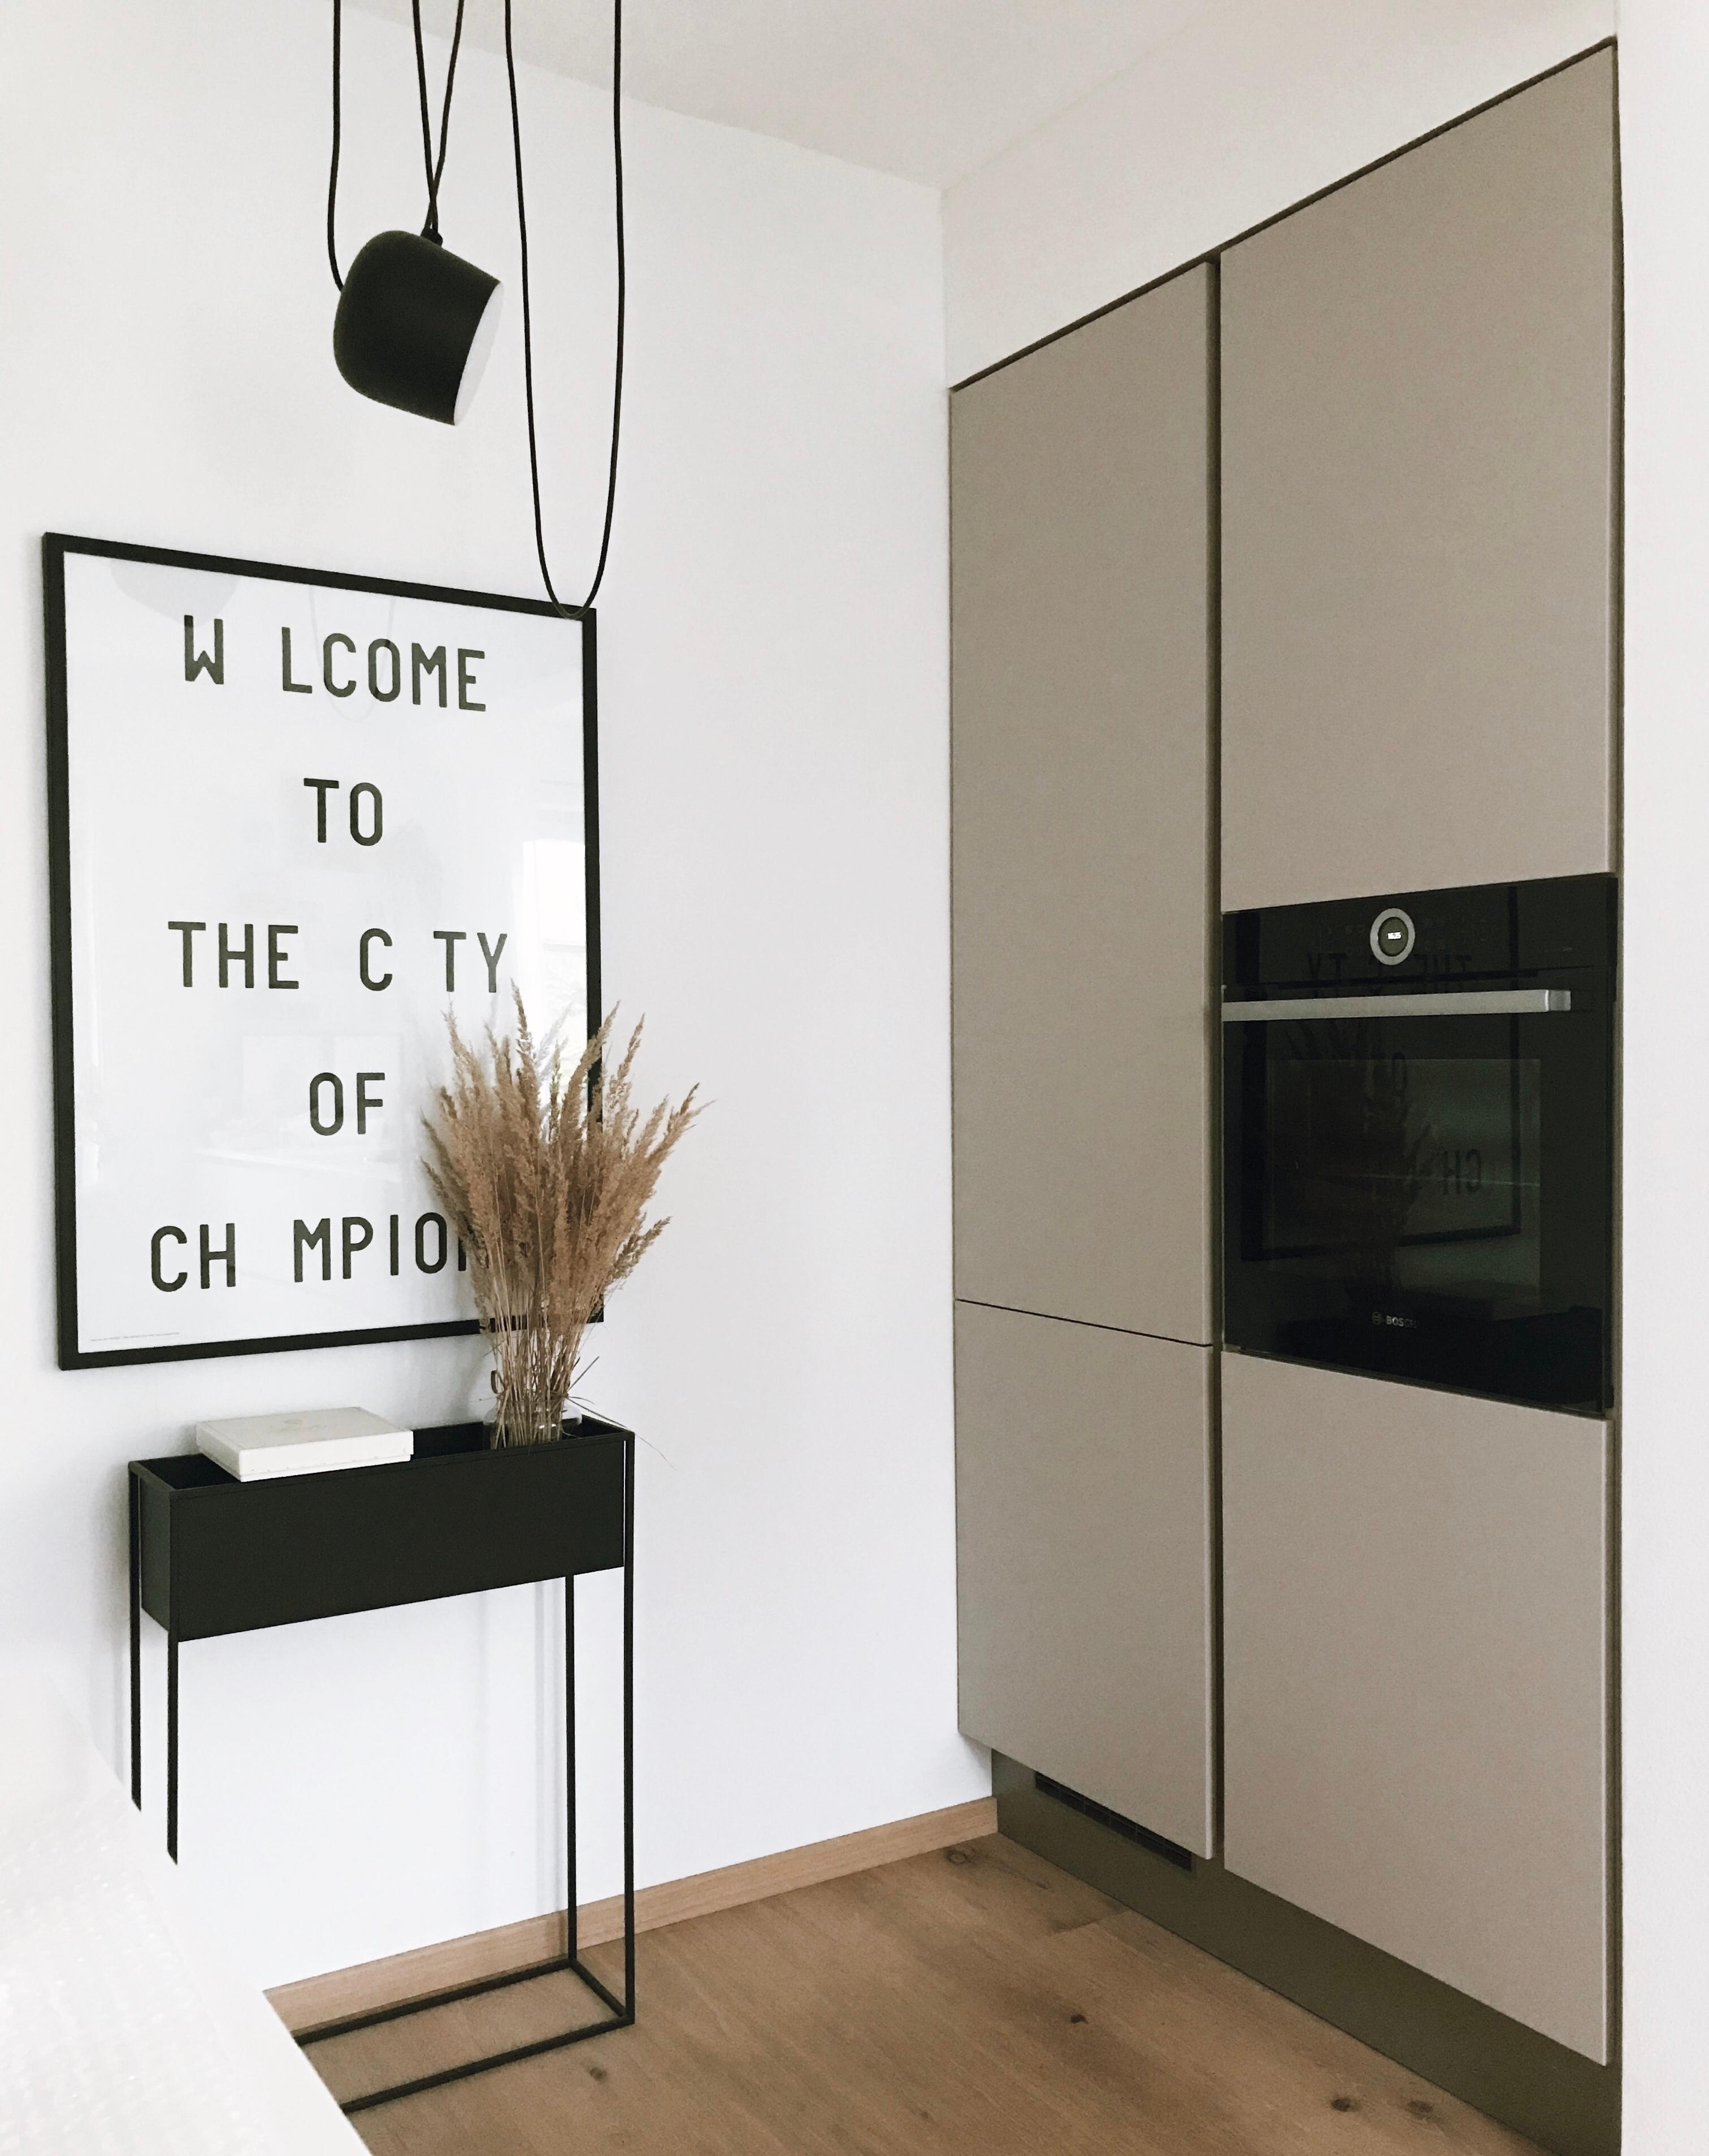 Küche. 🖤
#interior #küche #kitchen #minimal #flos #plantbox #küchenliebe #scandi #trockenblumen